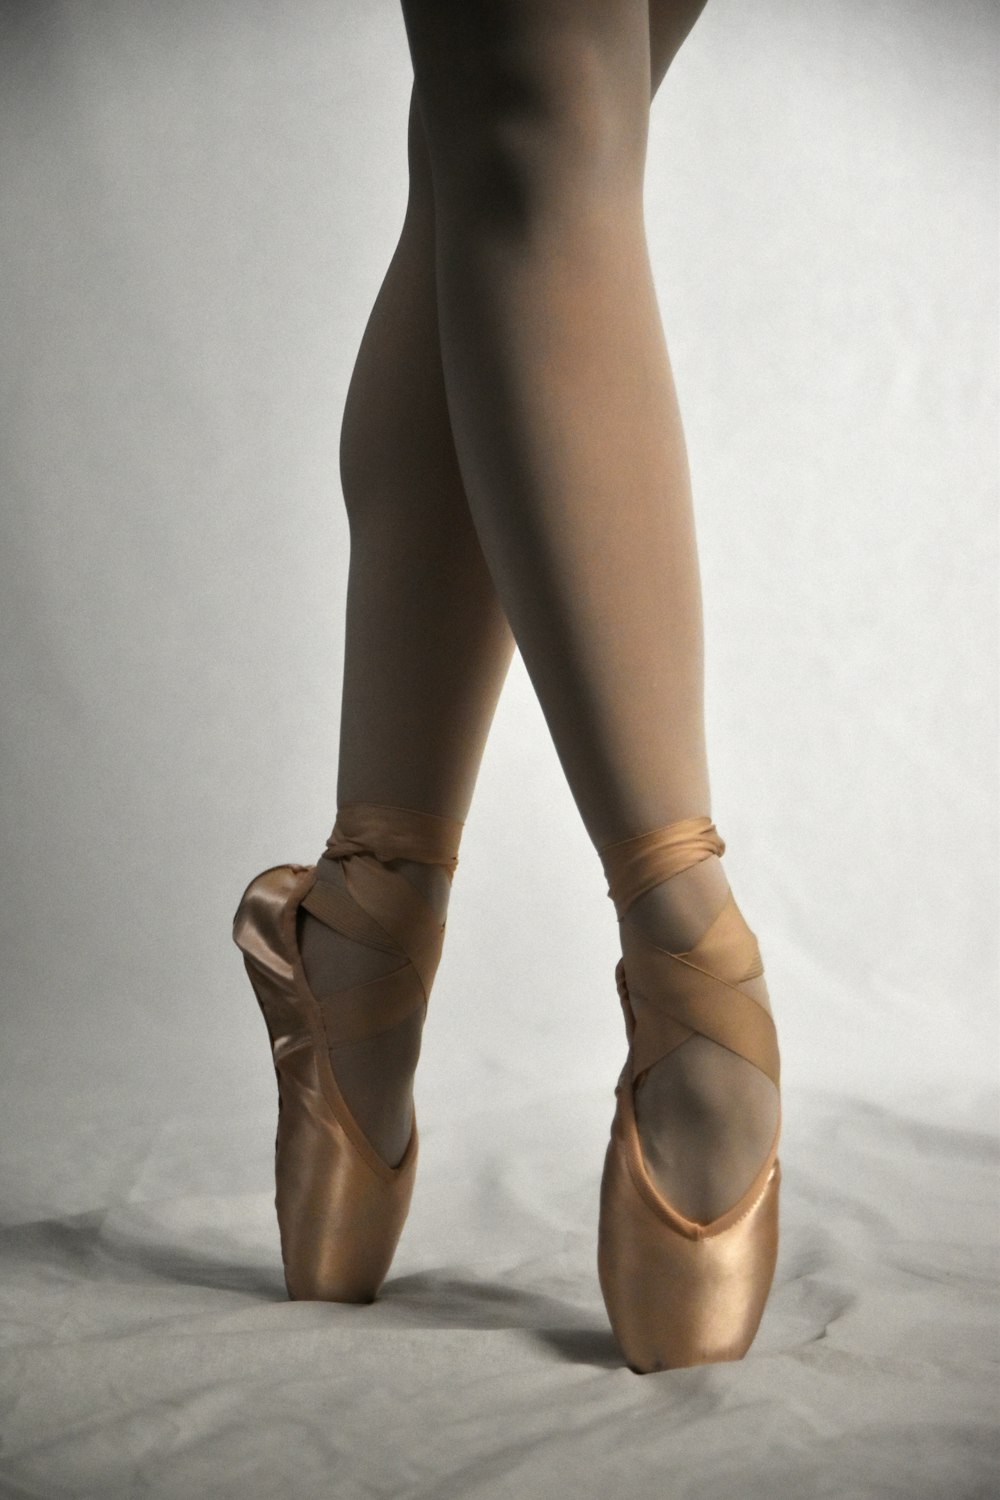 I piedi di una ballerina in un paio di scarpe da ballo foto – Vancouver  Immagine gratuita su Unsplash